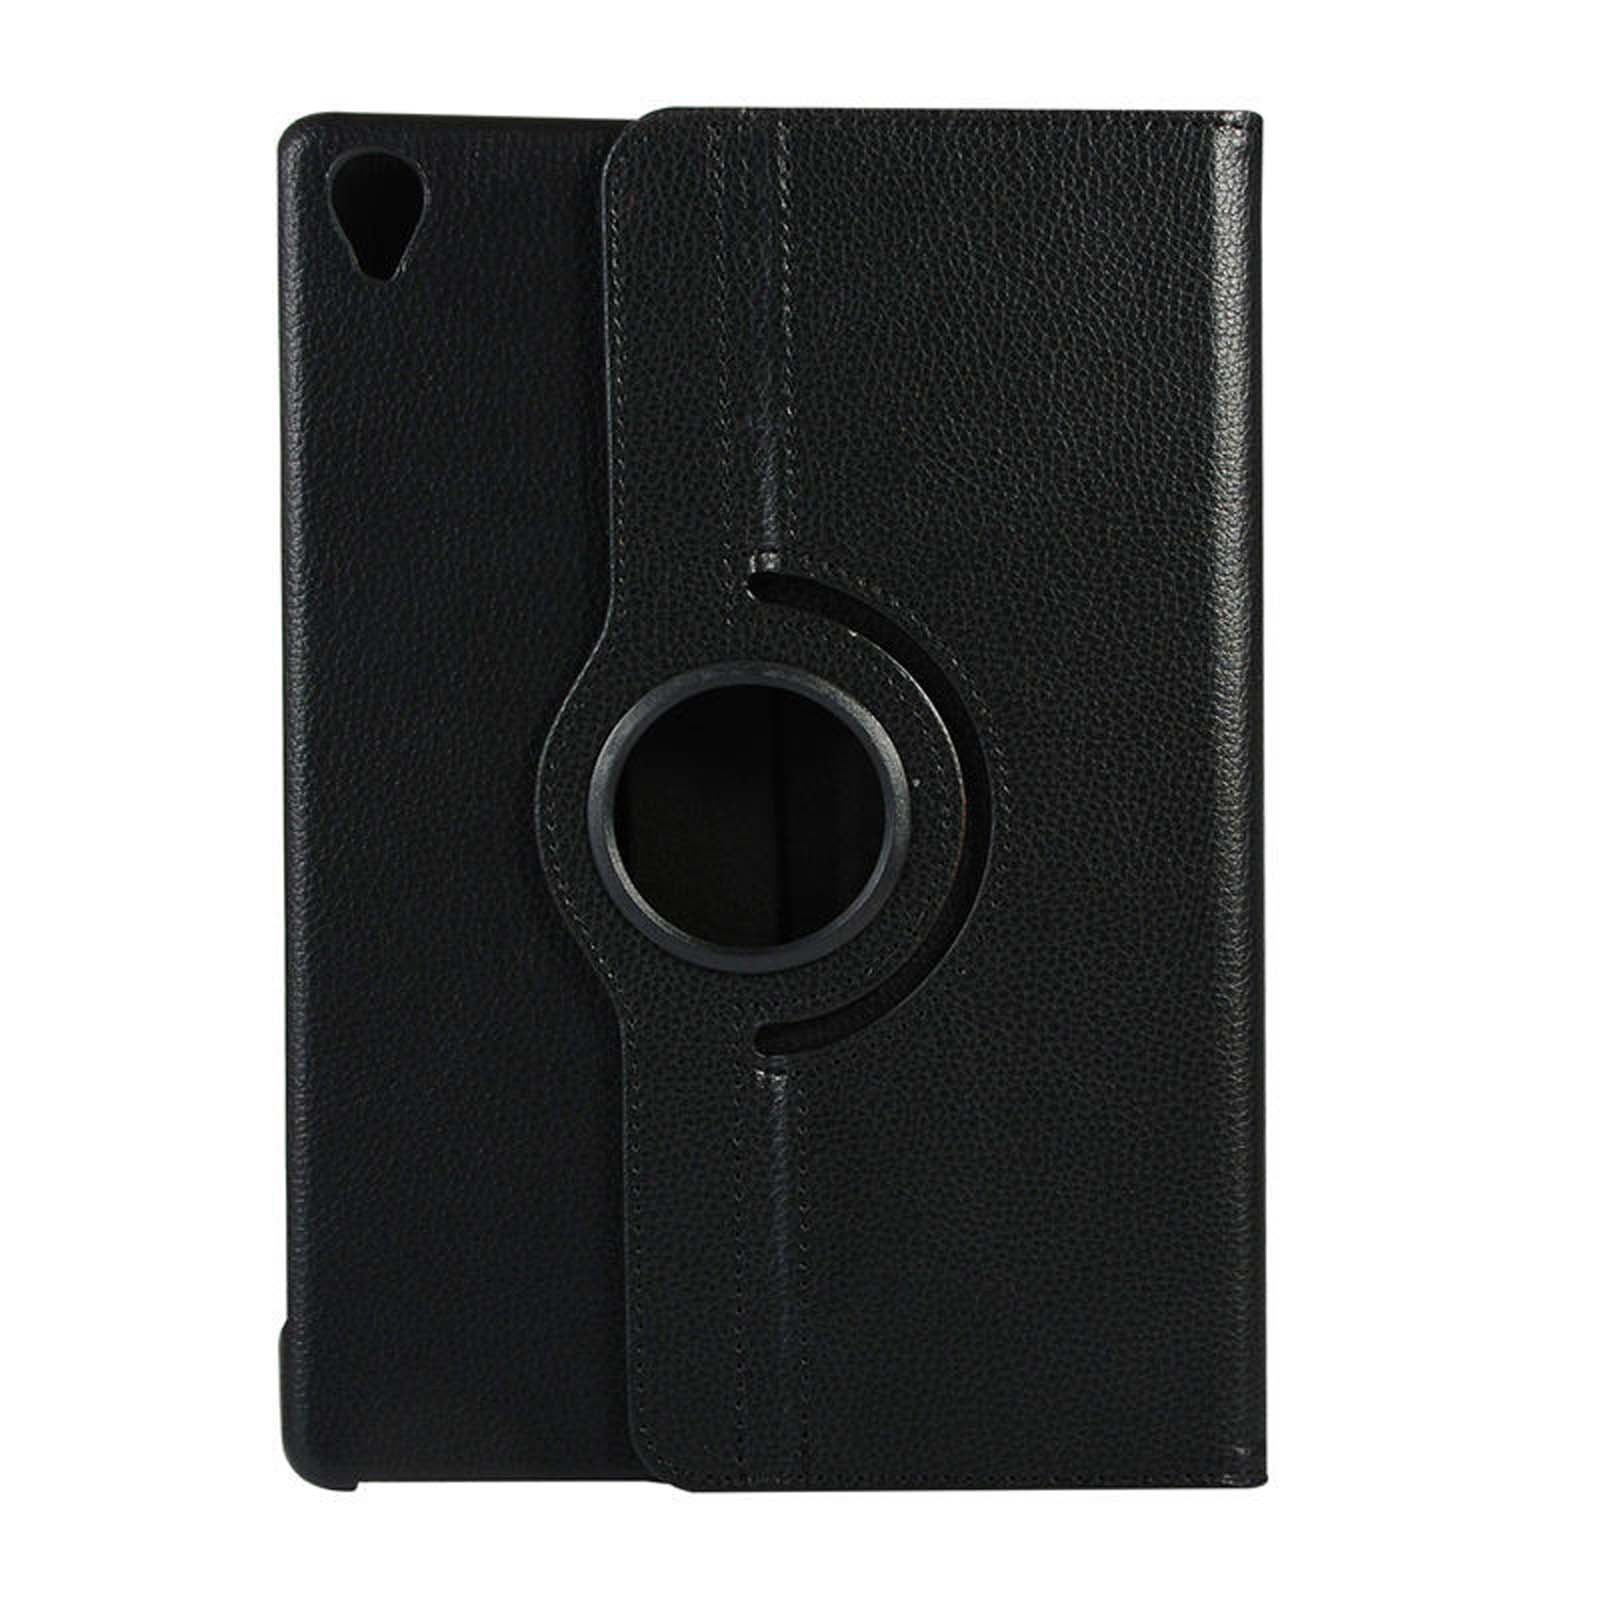 LOBWERK Hülle Schutzhülle für Kunstleder, Huawei MediaPad 10.8 Zoll M6 Schwarz Bookcover